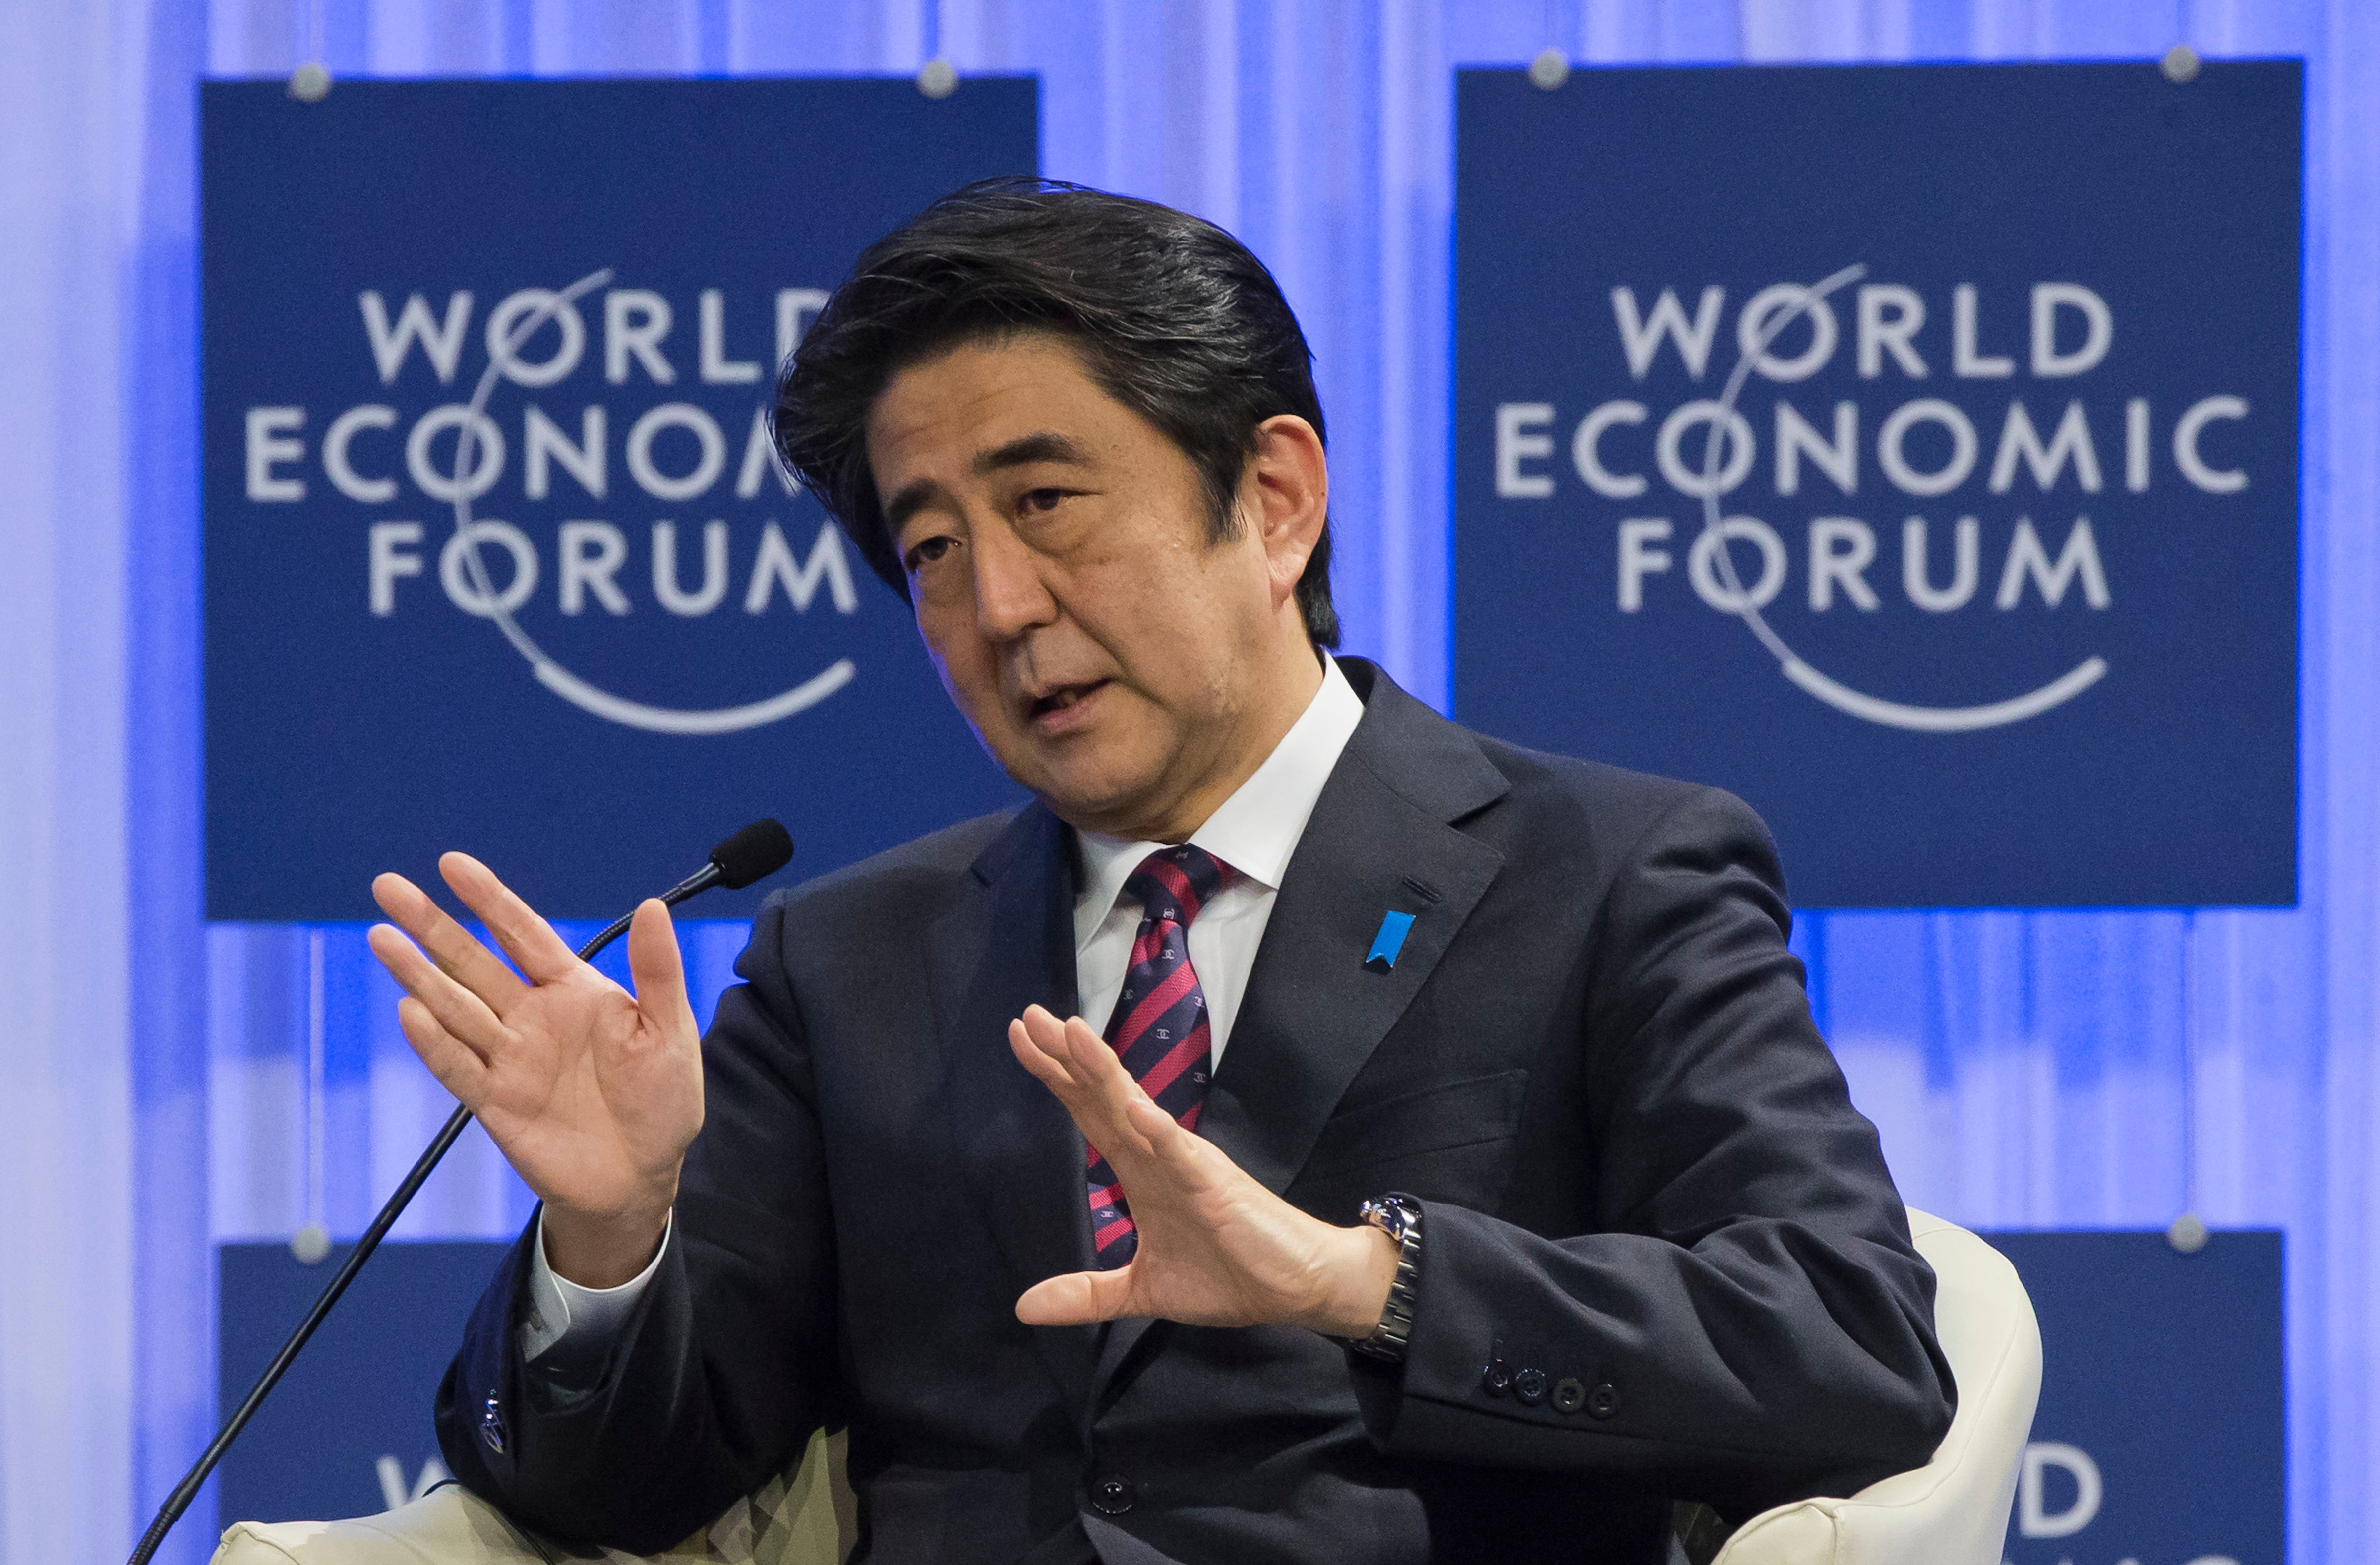 Japanese Prime Minister Shinzo Abe speaks at the World Economic Forum in Davos, Switzerland, on Jan. 22, 2014 (Michel Euler / AP)